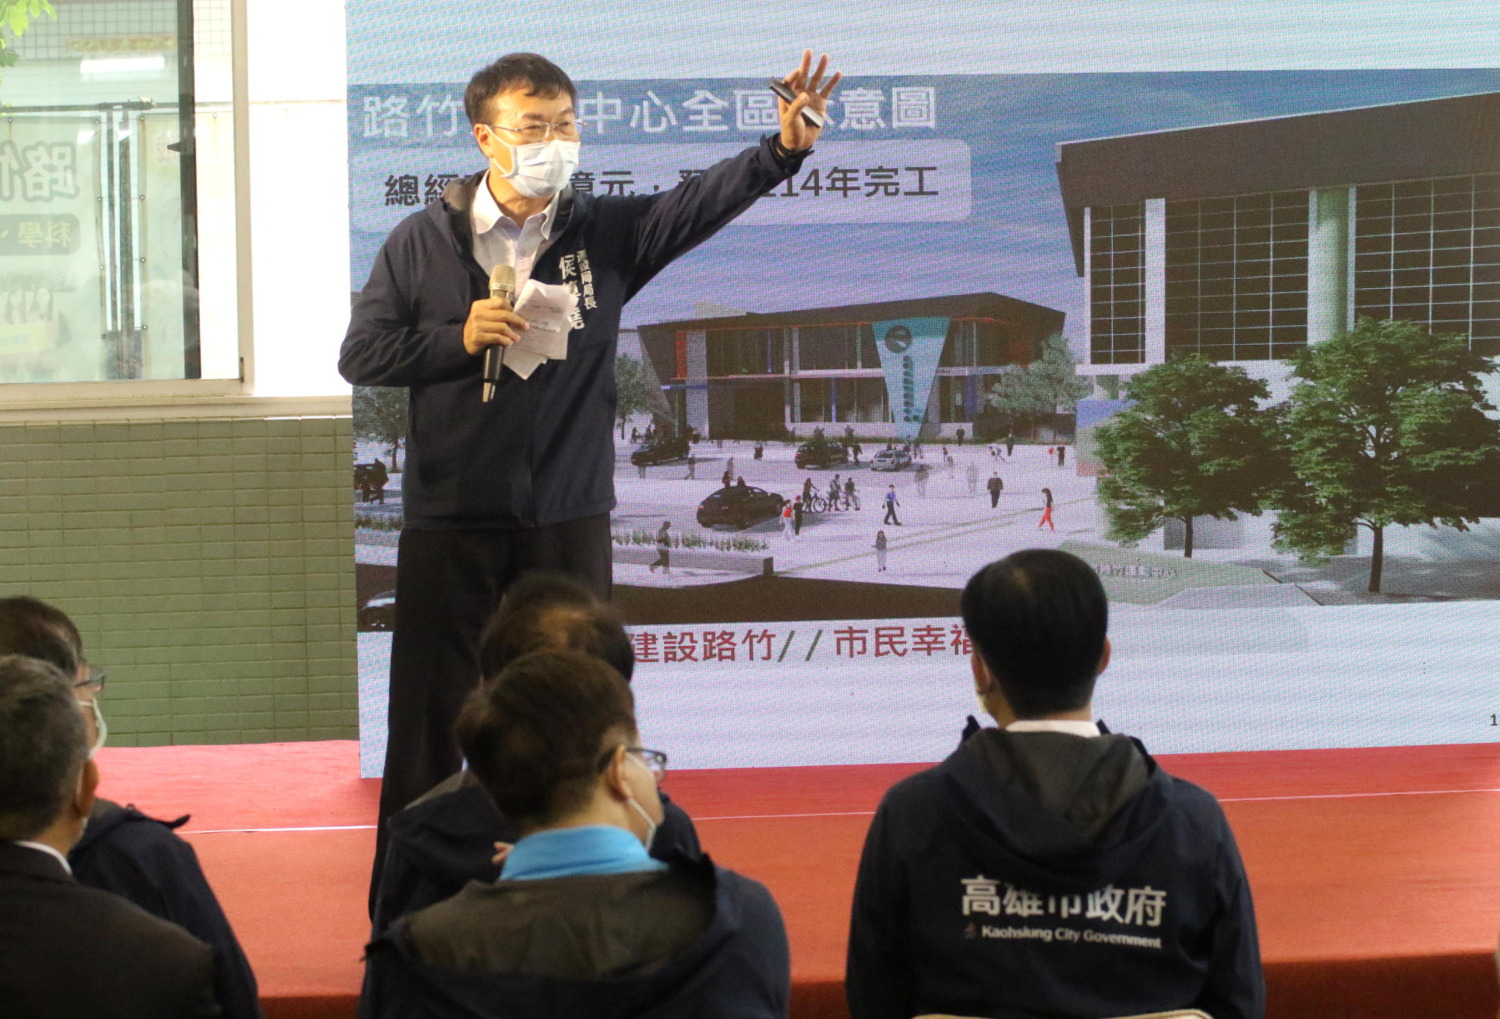 市長陳其邁視察路竹運動中心基地 宣示超前佈署第14座運動中心及北高雄建設